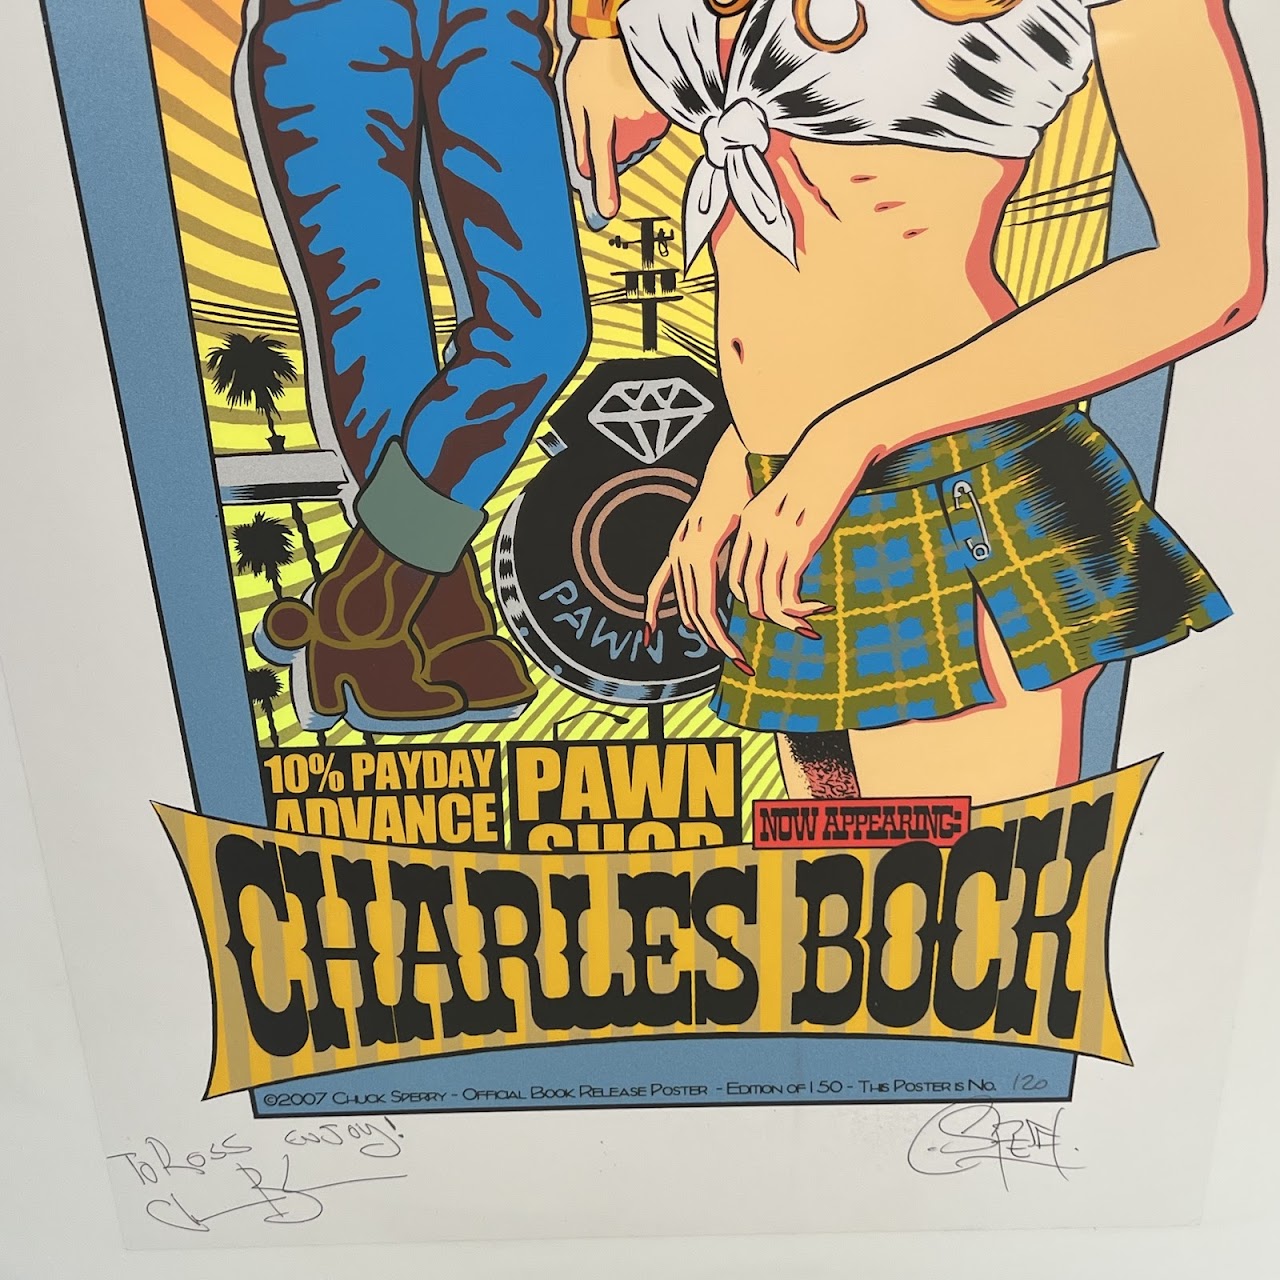 Chuck Sperry: Charles Bock 'Beautiful Children' Book Release Silkscreen Poster